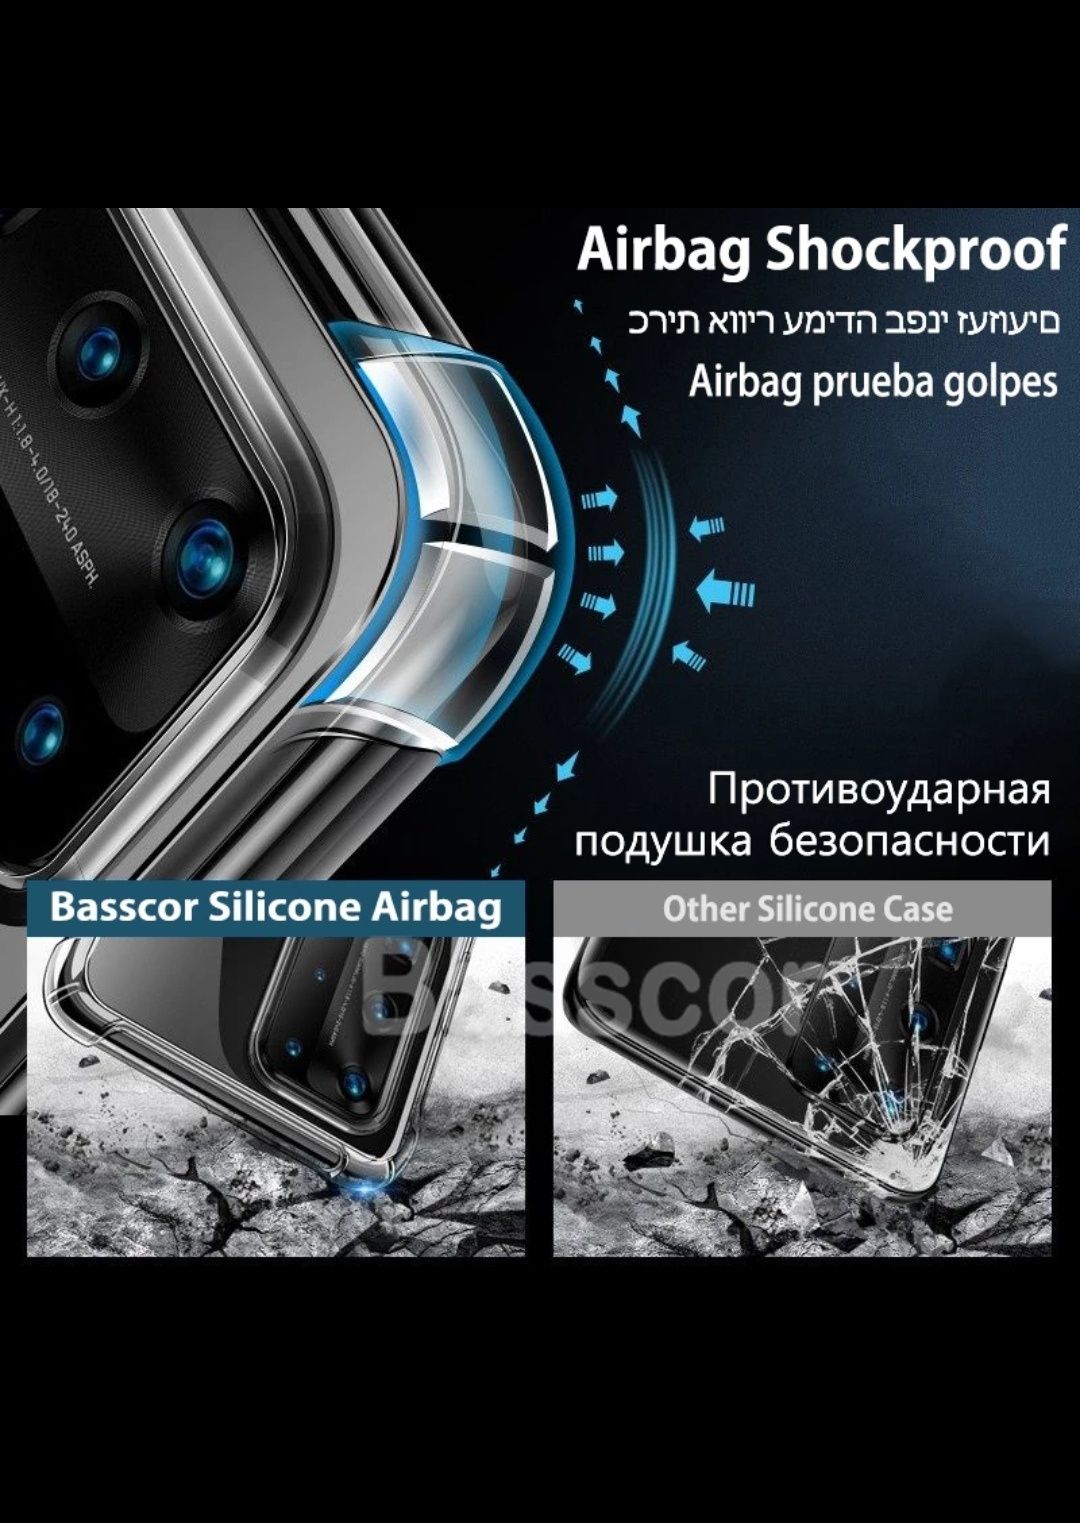 Husa silicon transparent Samsung s21 cu protecție la colturi